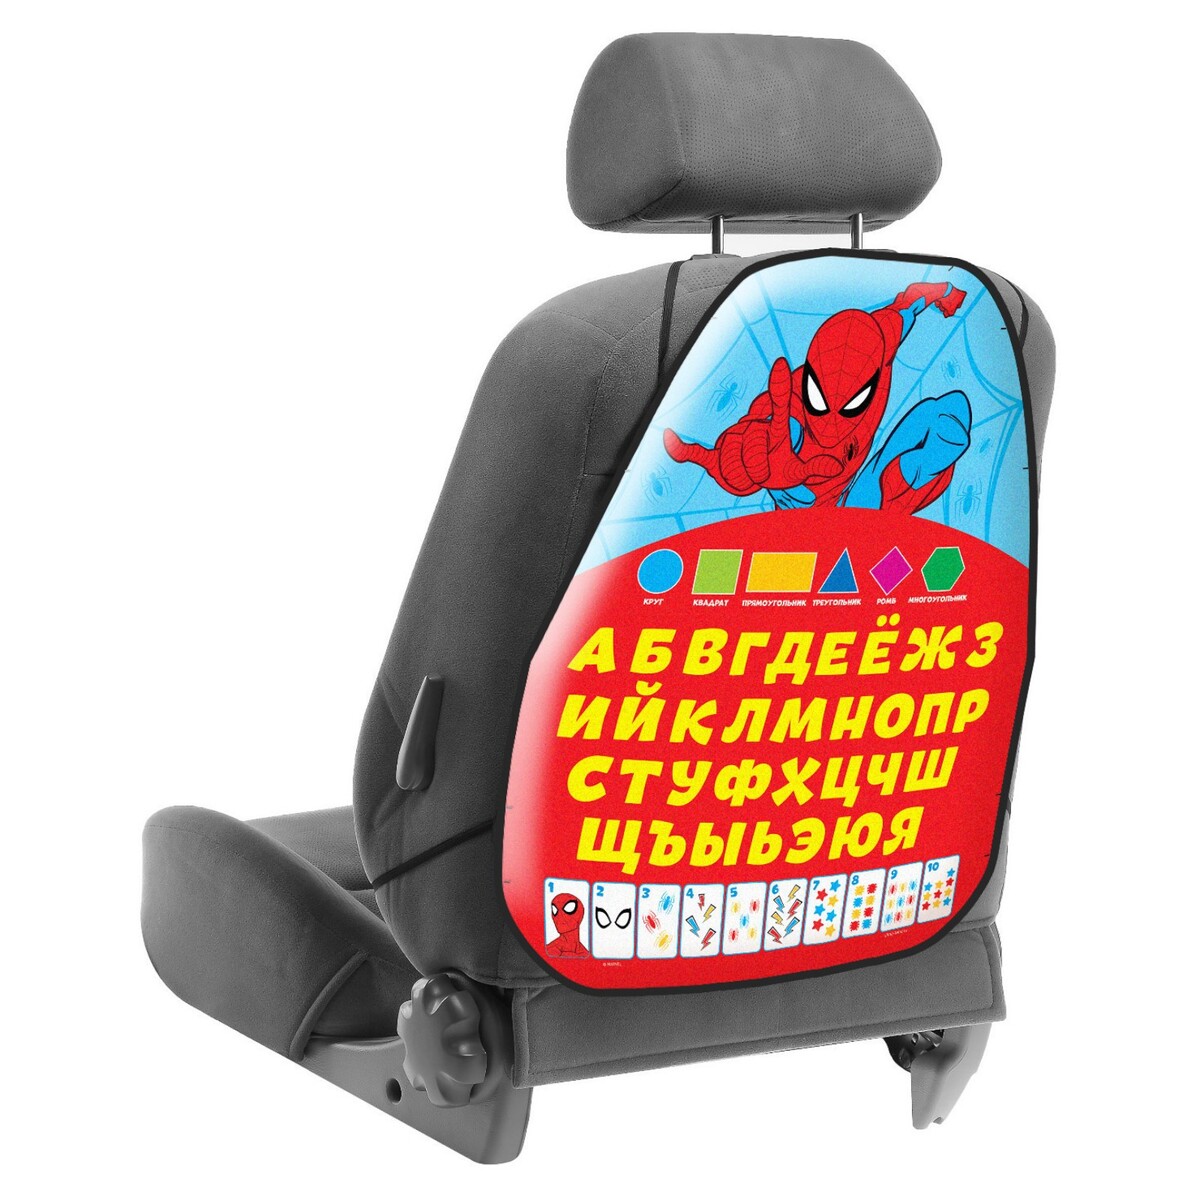 Незапинайка на автомобильное кресло, массажное кресло victoryfit vf m18